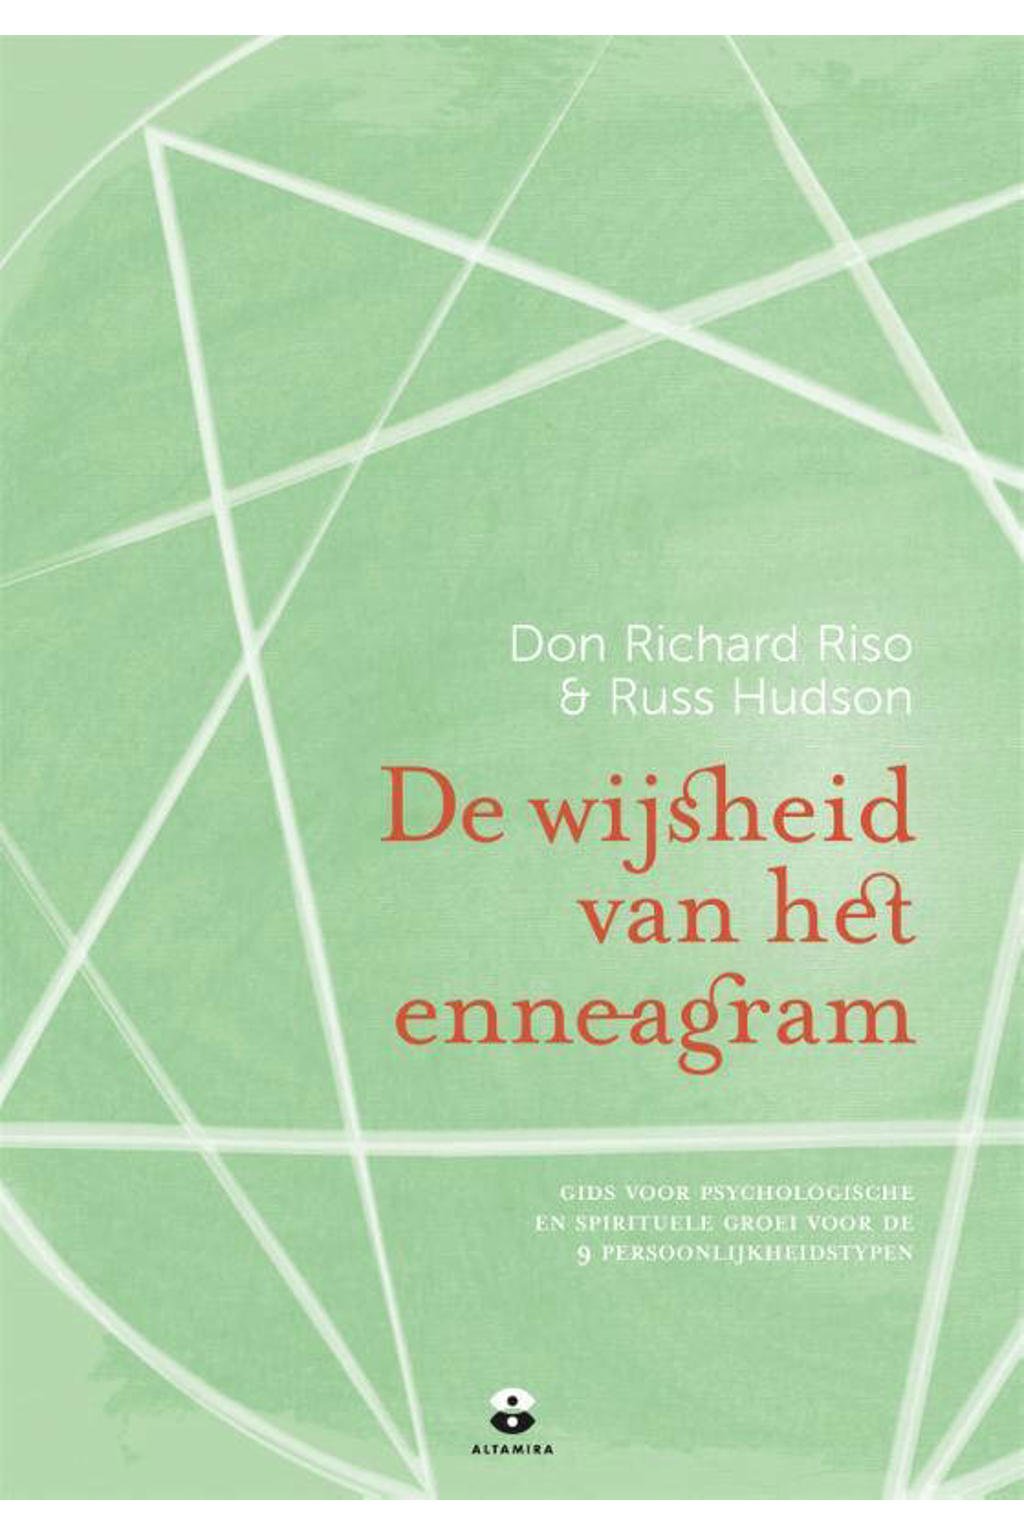 De wijsheid van het enneagram - Don Richard Riso en Russ Hudson